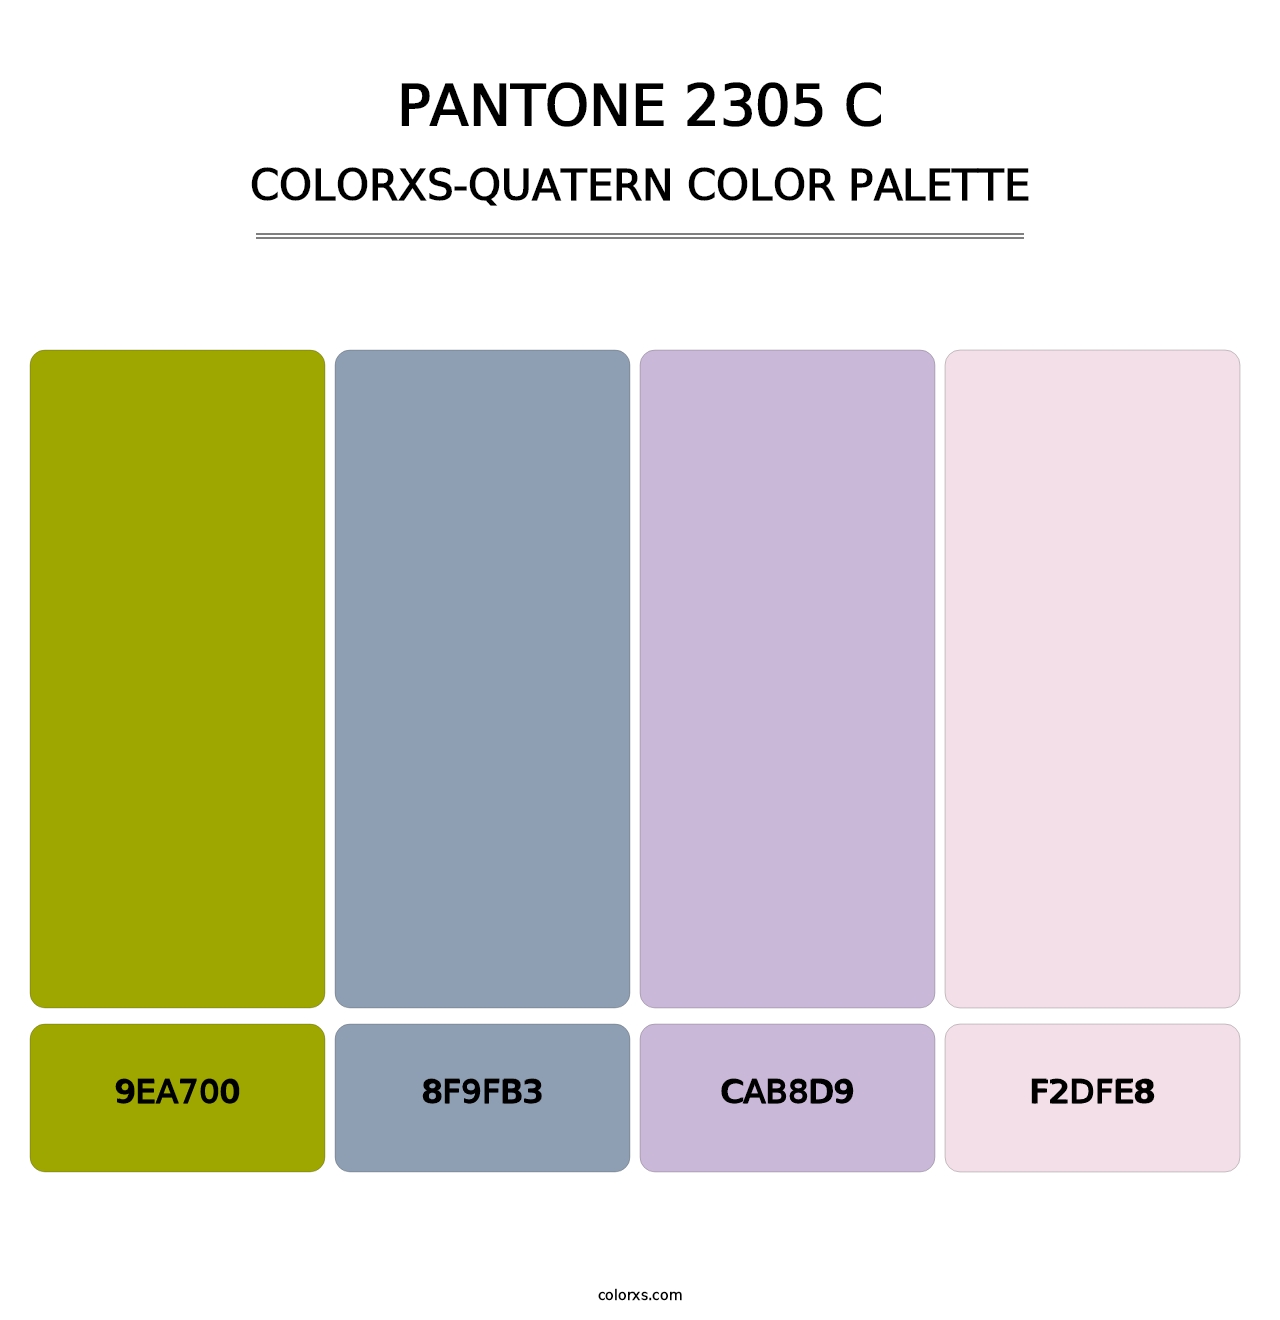 PANTONE 2305 C - Colorxs Quatern Palette